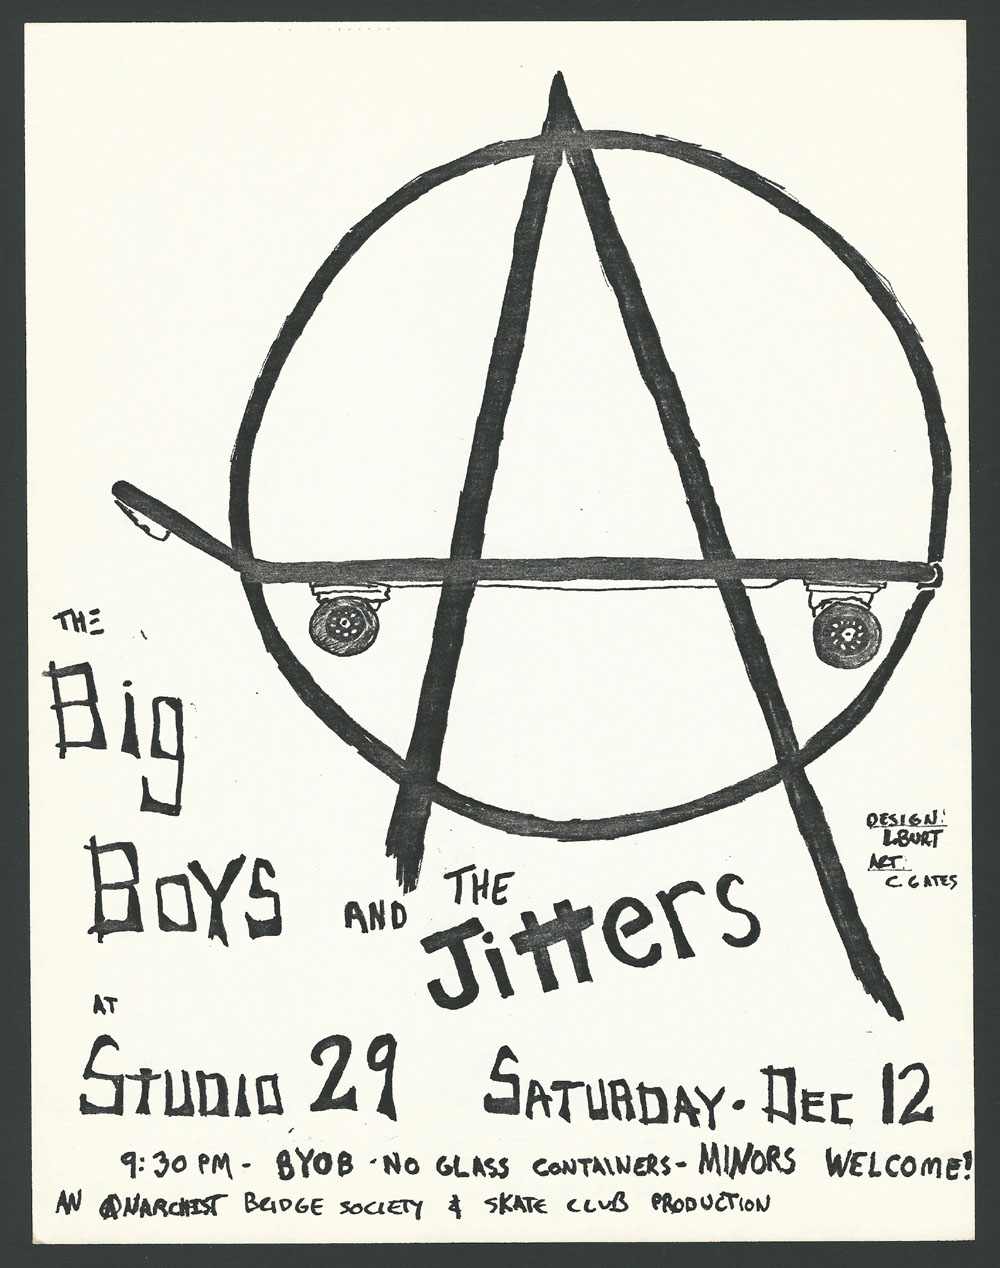 BIG BOYS w/ Jitters at Studio 29